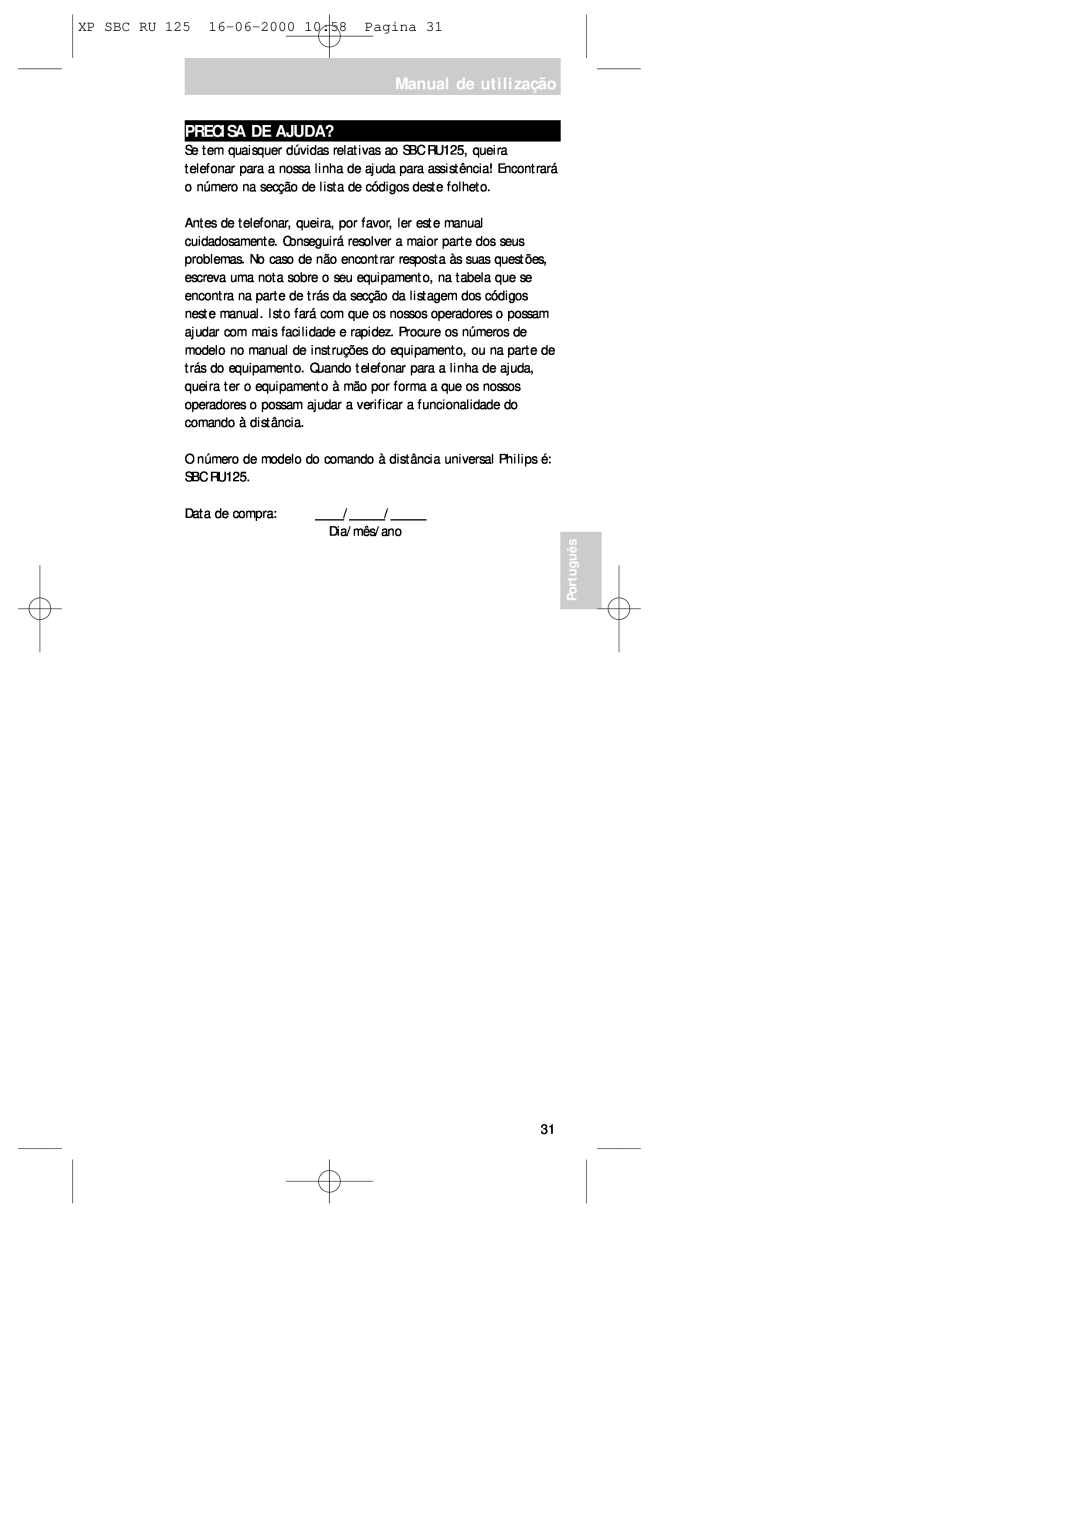 Philips manual Manual de utilização PRECISA DE AJUDA?, XP SBC RU 125 16-06-200010 58 Pagina, SBC RU125, Data de compra 